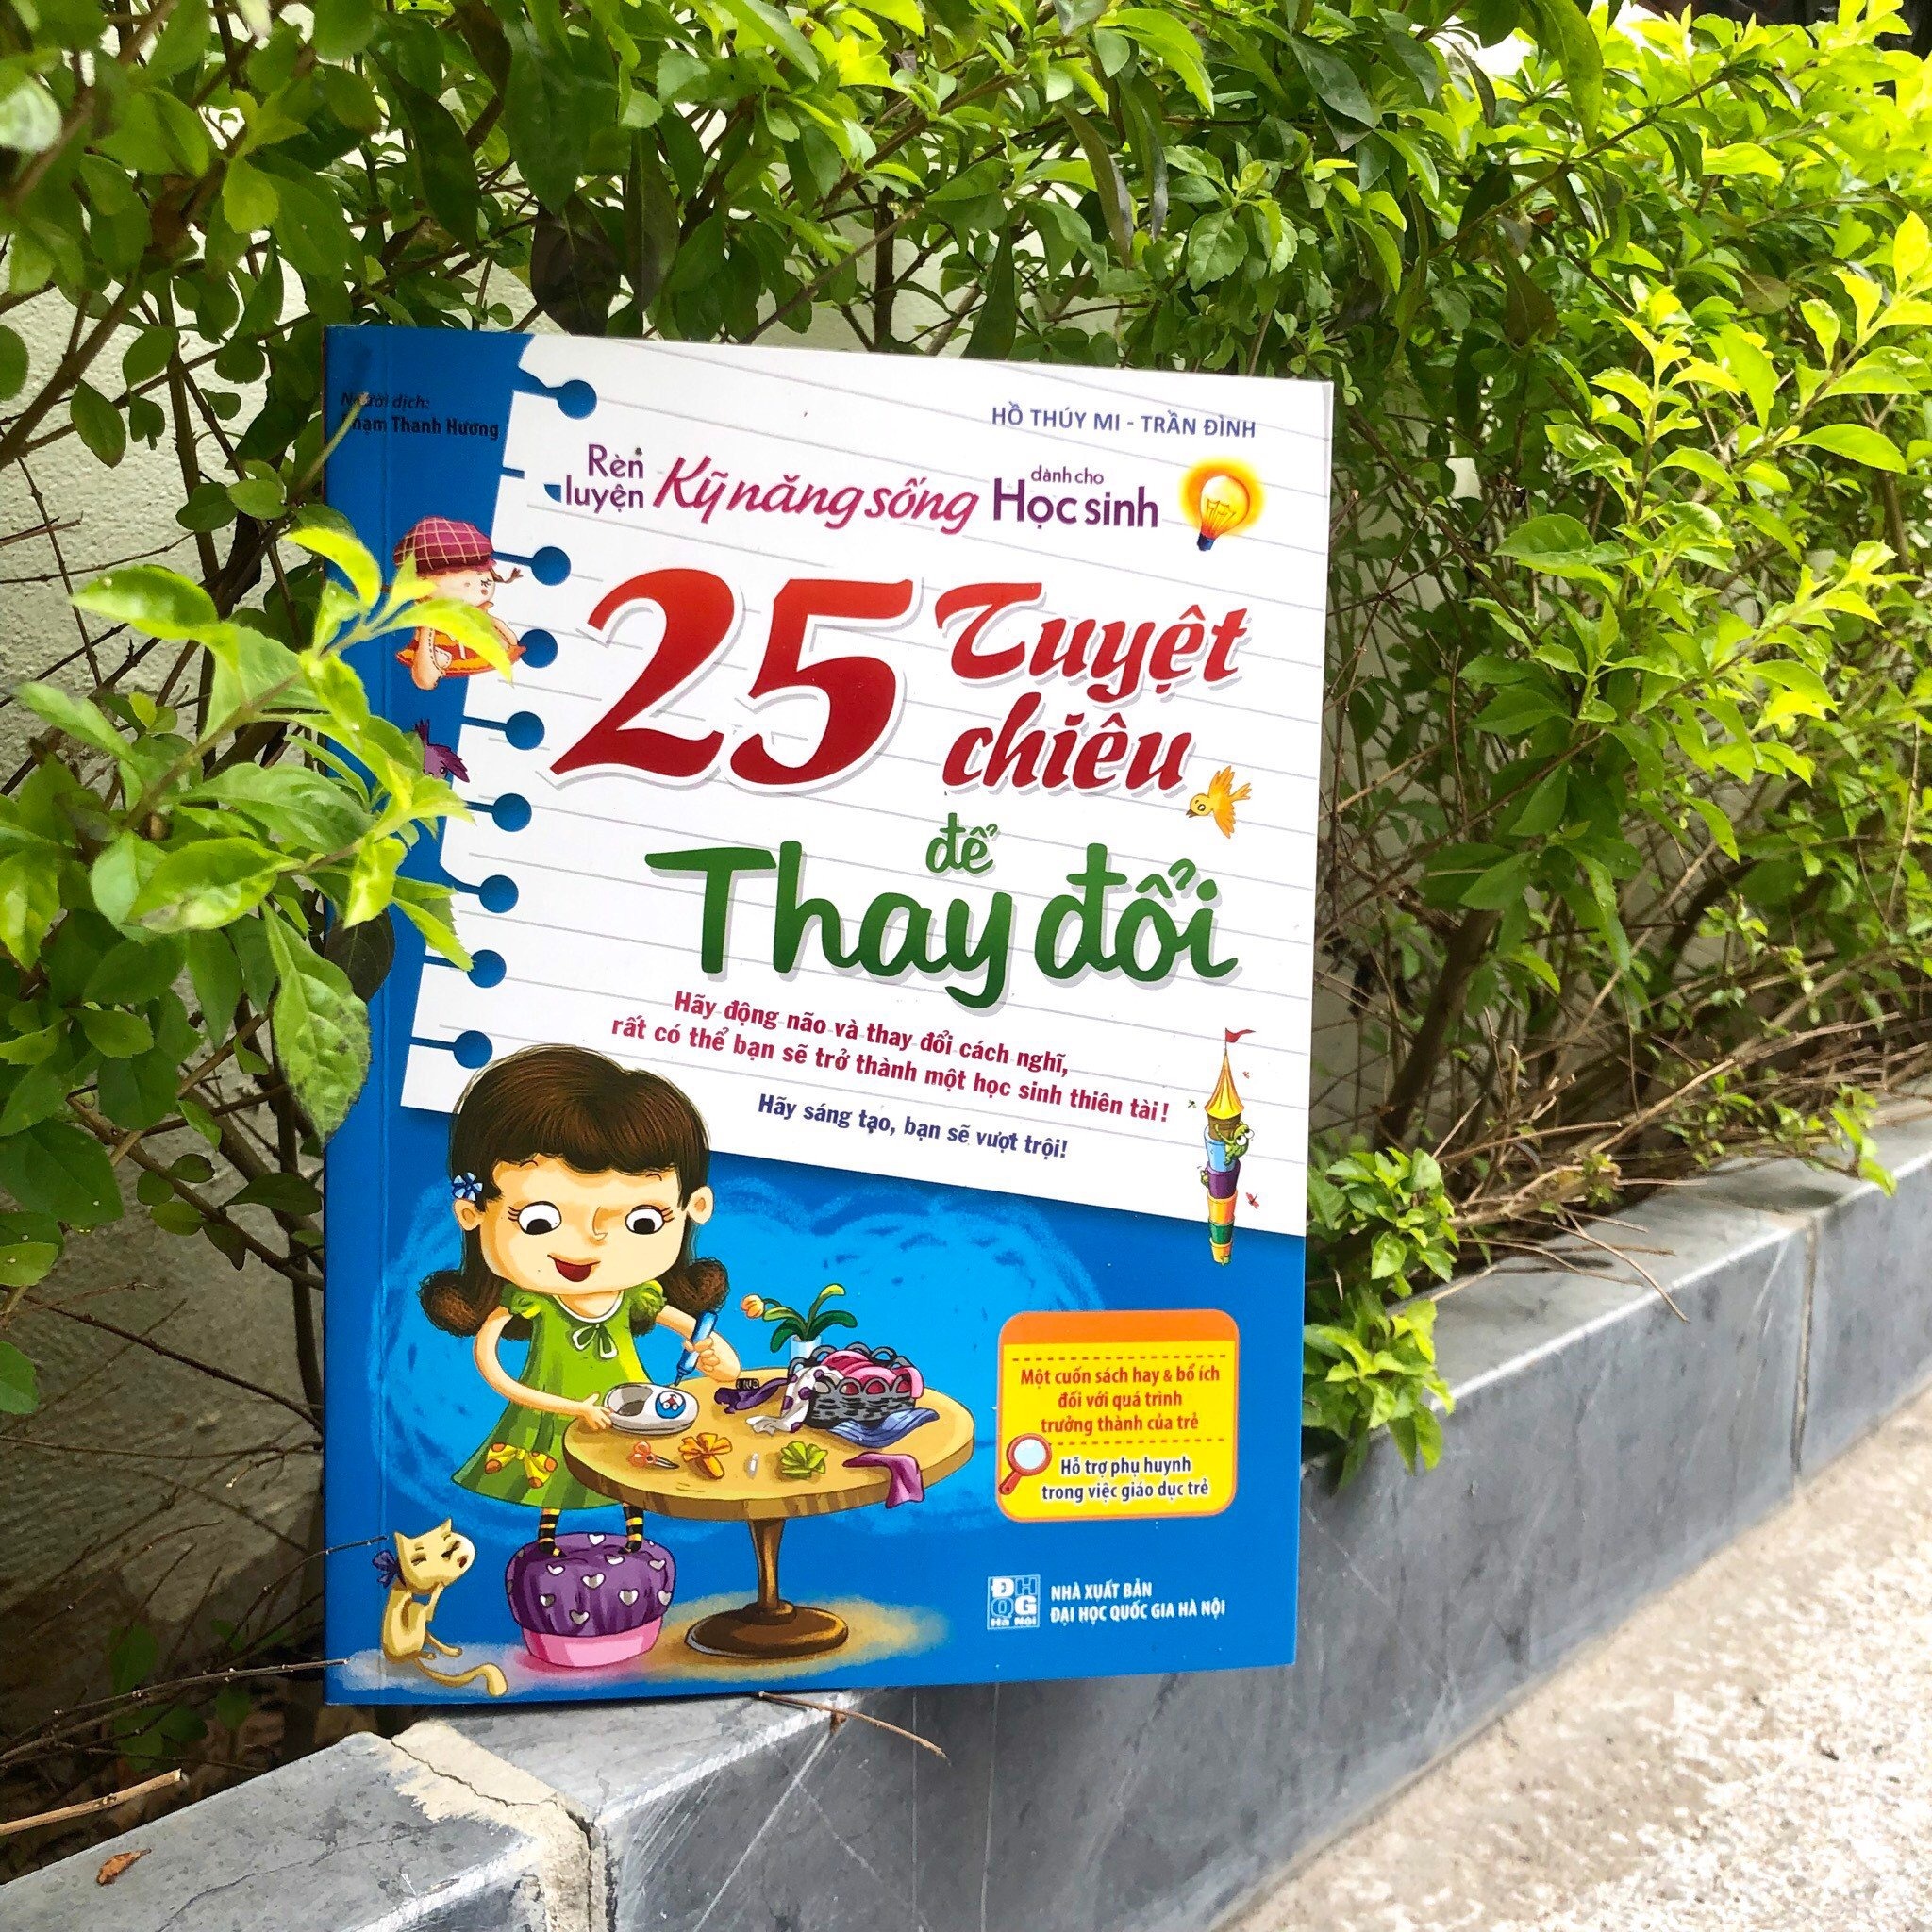 Sách: Rèn Luyện Kỹ Năng Sống Cho Học Sinh - 25 Tuyệt Chiêu Để Thay Đổi